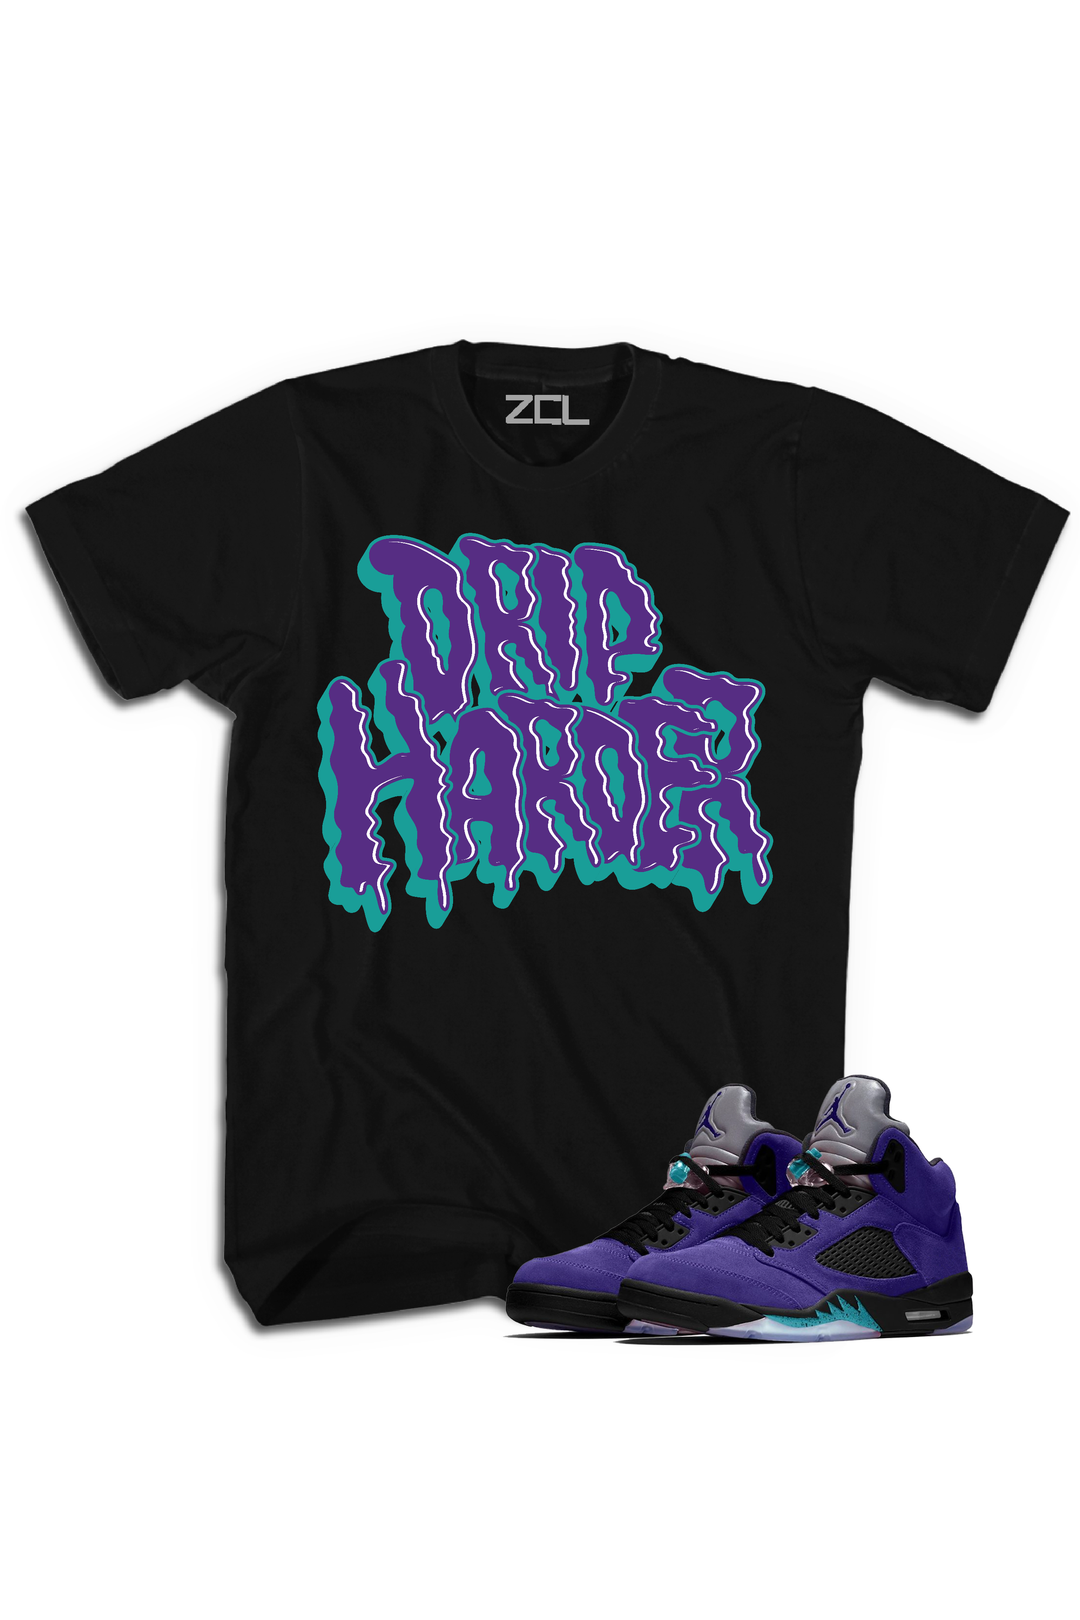 Air Jordan 5 Retro "Drip Harder" Tee Purple Grape - Zamage